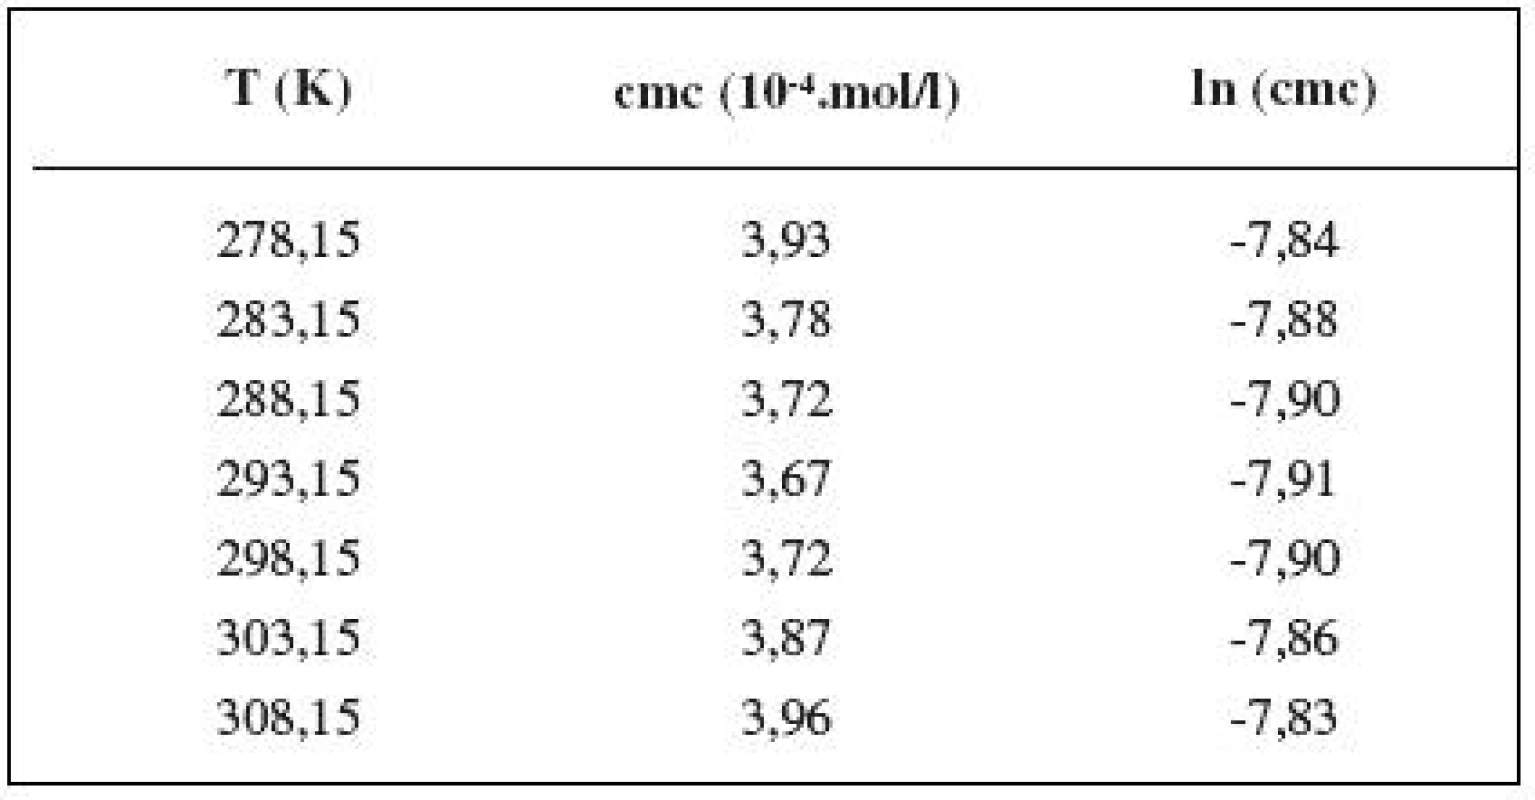 Zistené hodnoty cmc a ln (cmc) meranej látky v 1 mol/l roztoku NaCl
